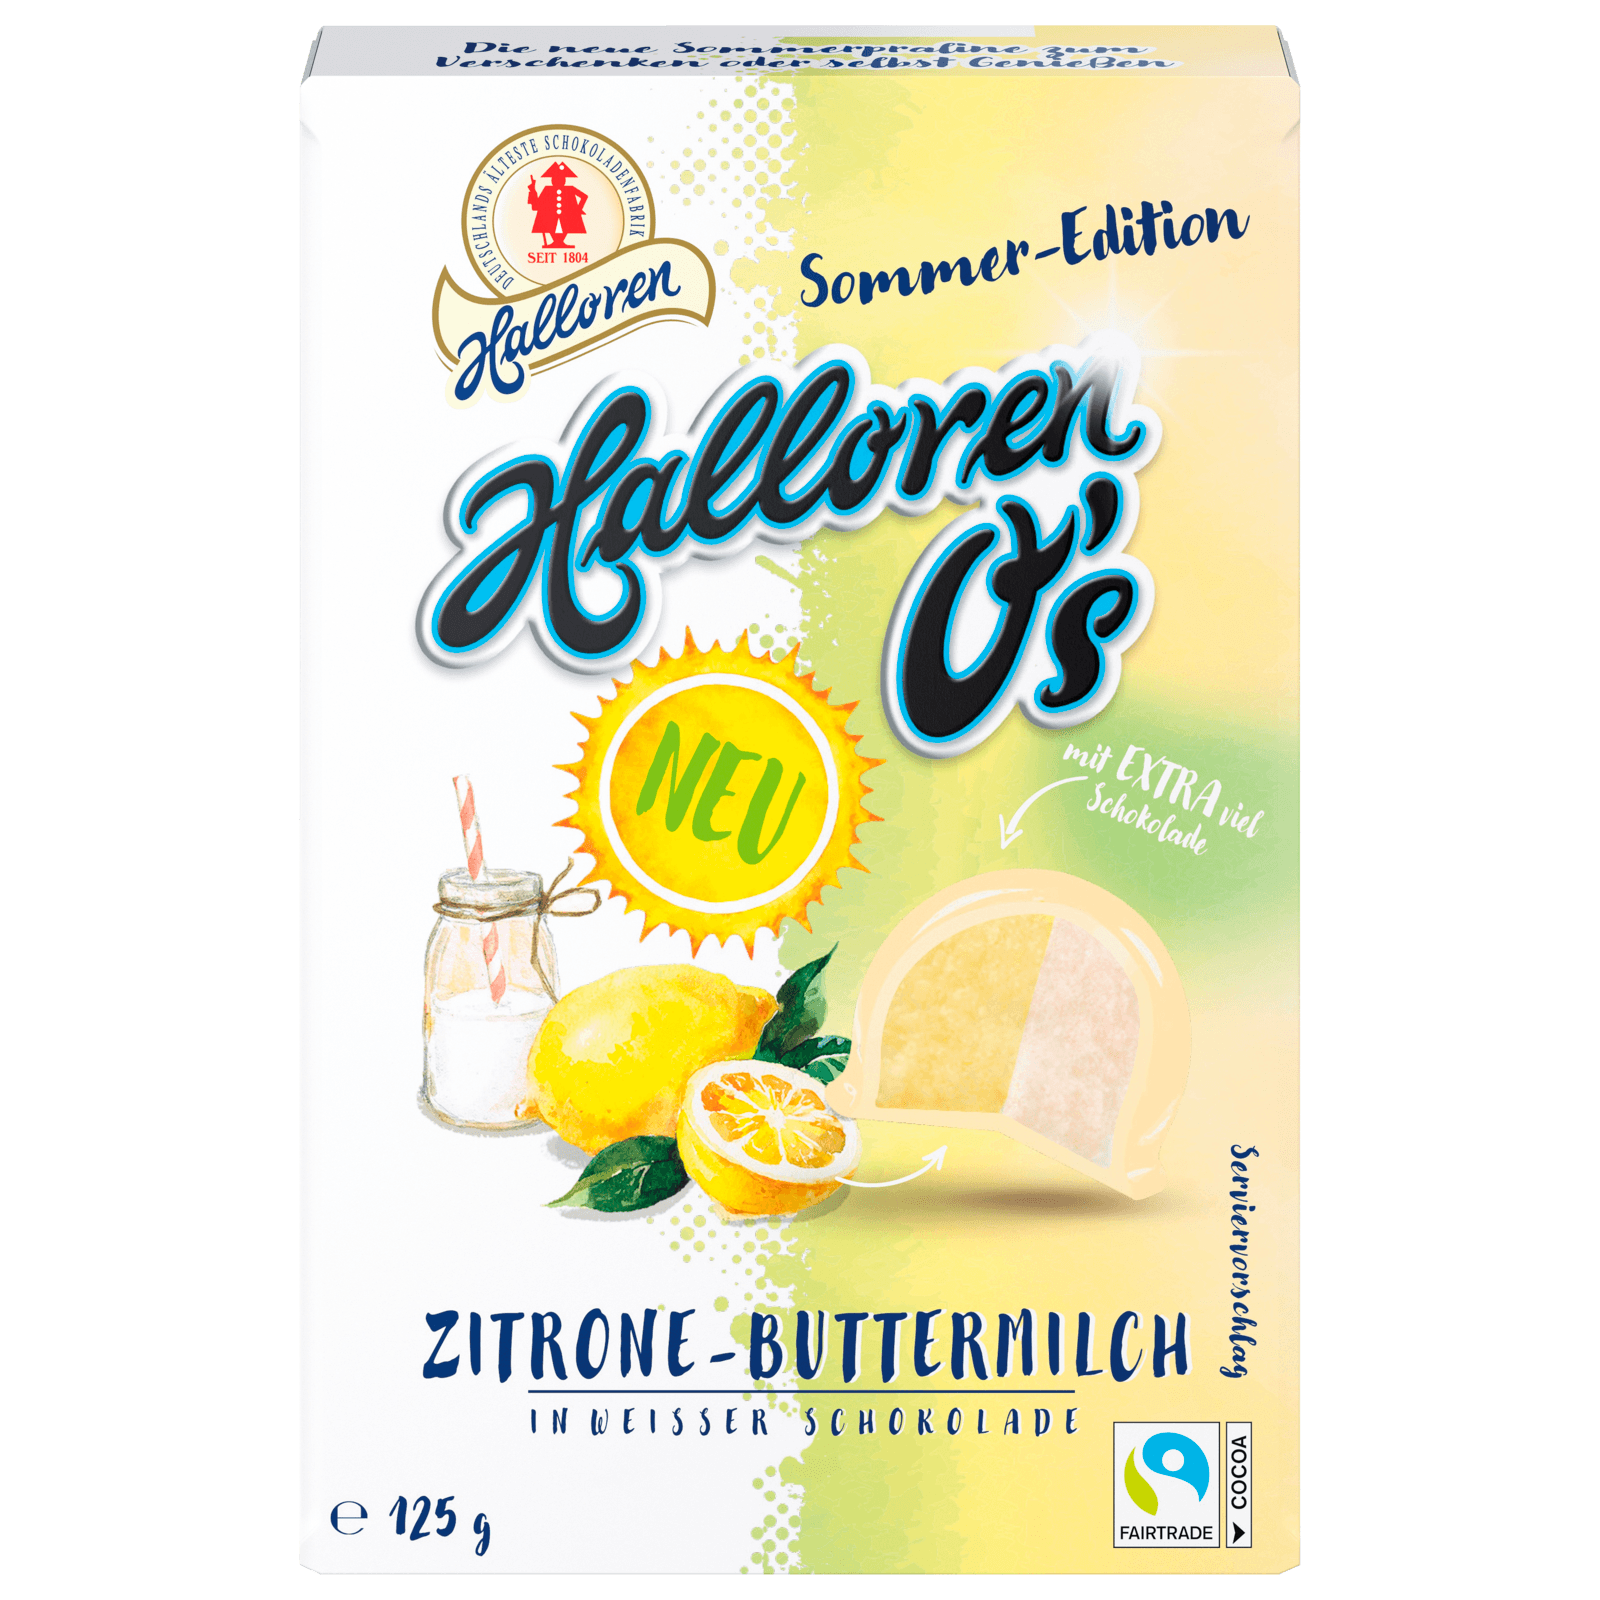 Halloren O's Zitrone-Buttermilch in weißer Schokolade 125g bei REWE online  bestellen!